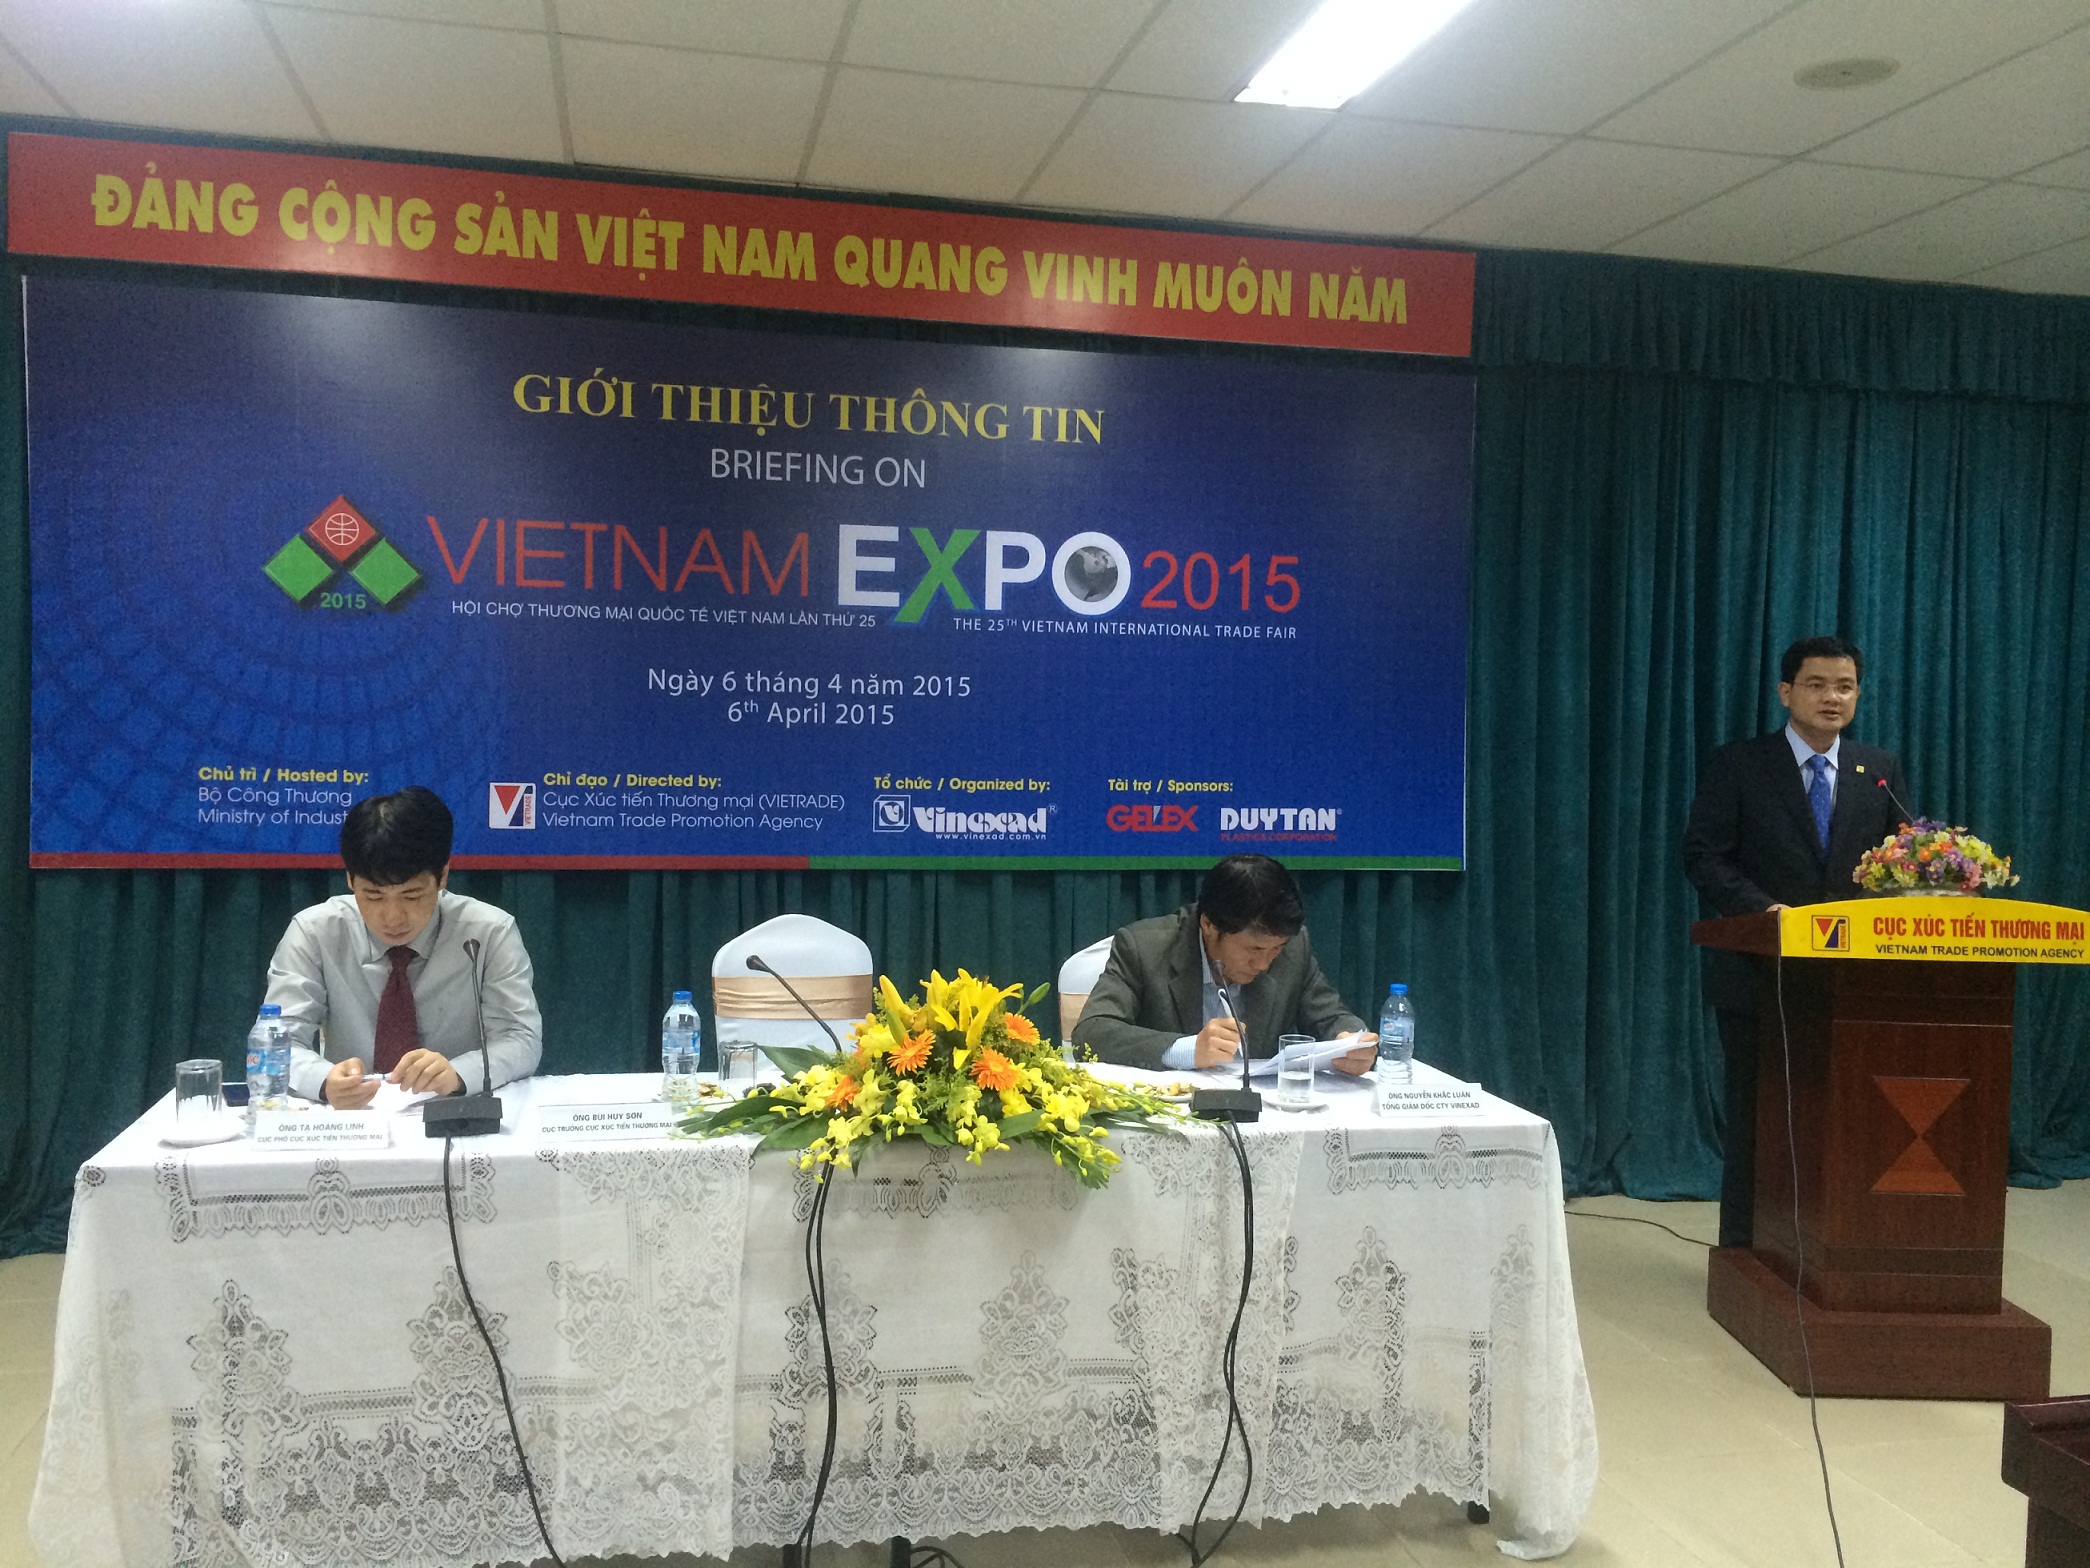 Hội chợ VIETNAM EXPO 2015: Doanh nghiệp muốn tham gia mà không có 'đất'